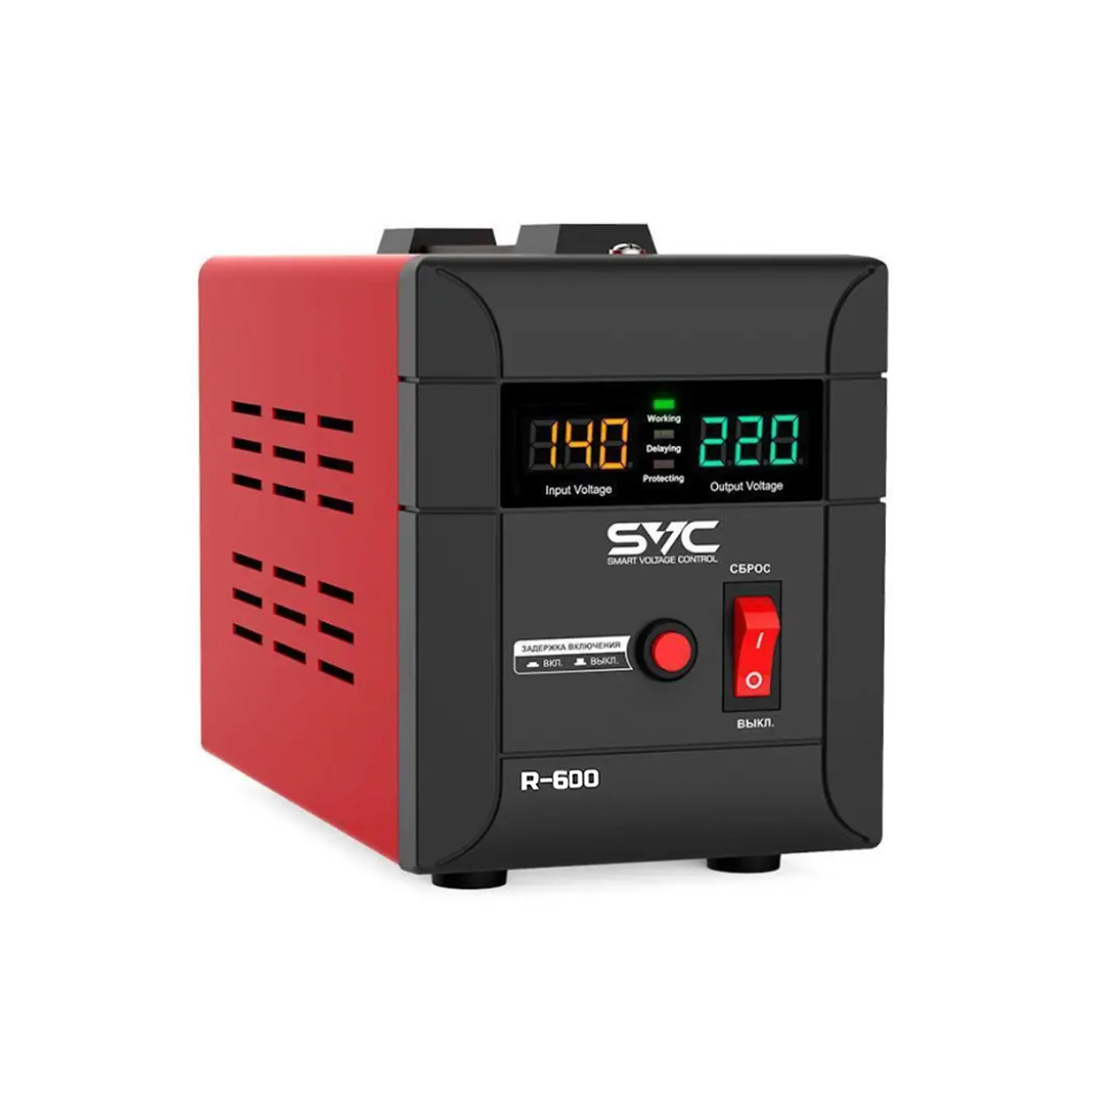 Стабилизатор (AVR), SVC, R-600, 600ВА/500Вт, Диапазон работы AVR: 140-260В, Выходное напряжение: 220